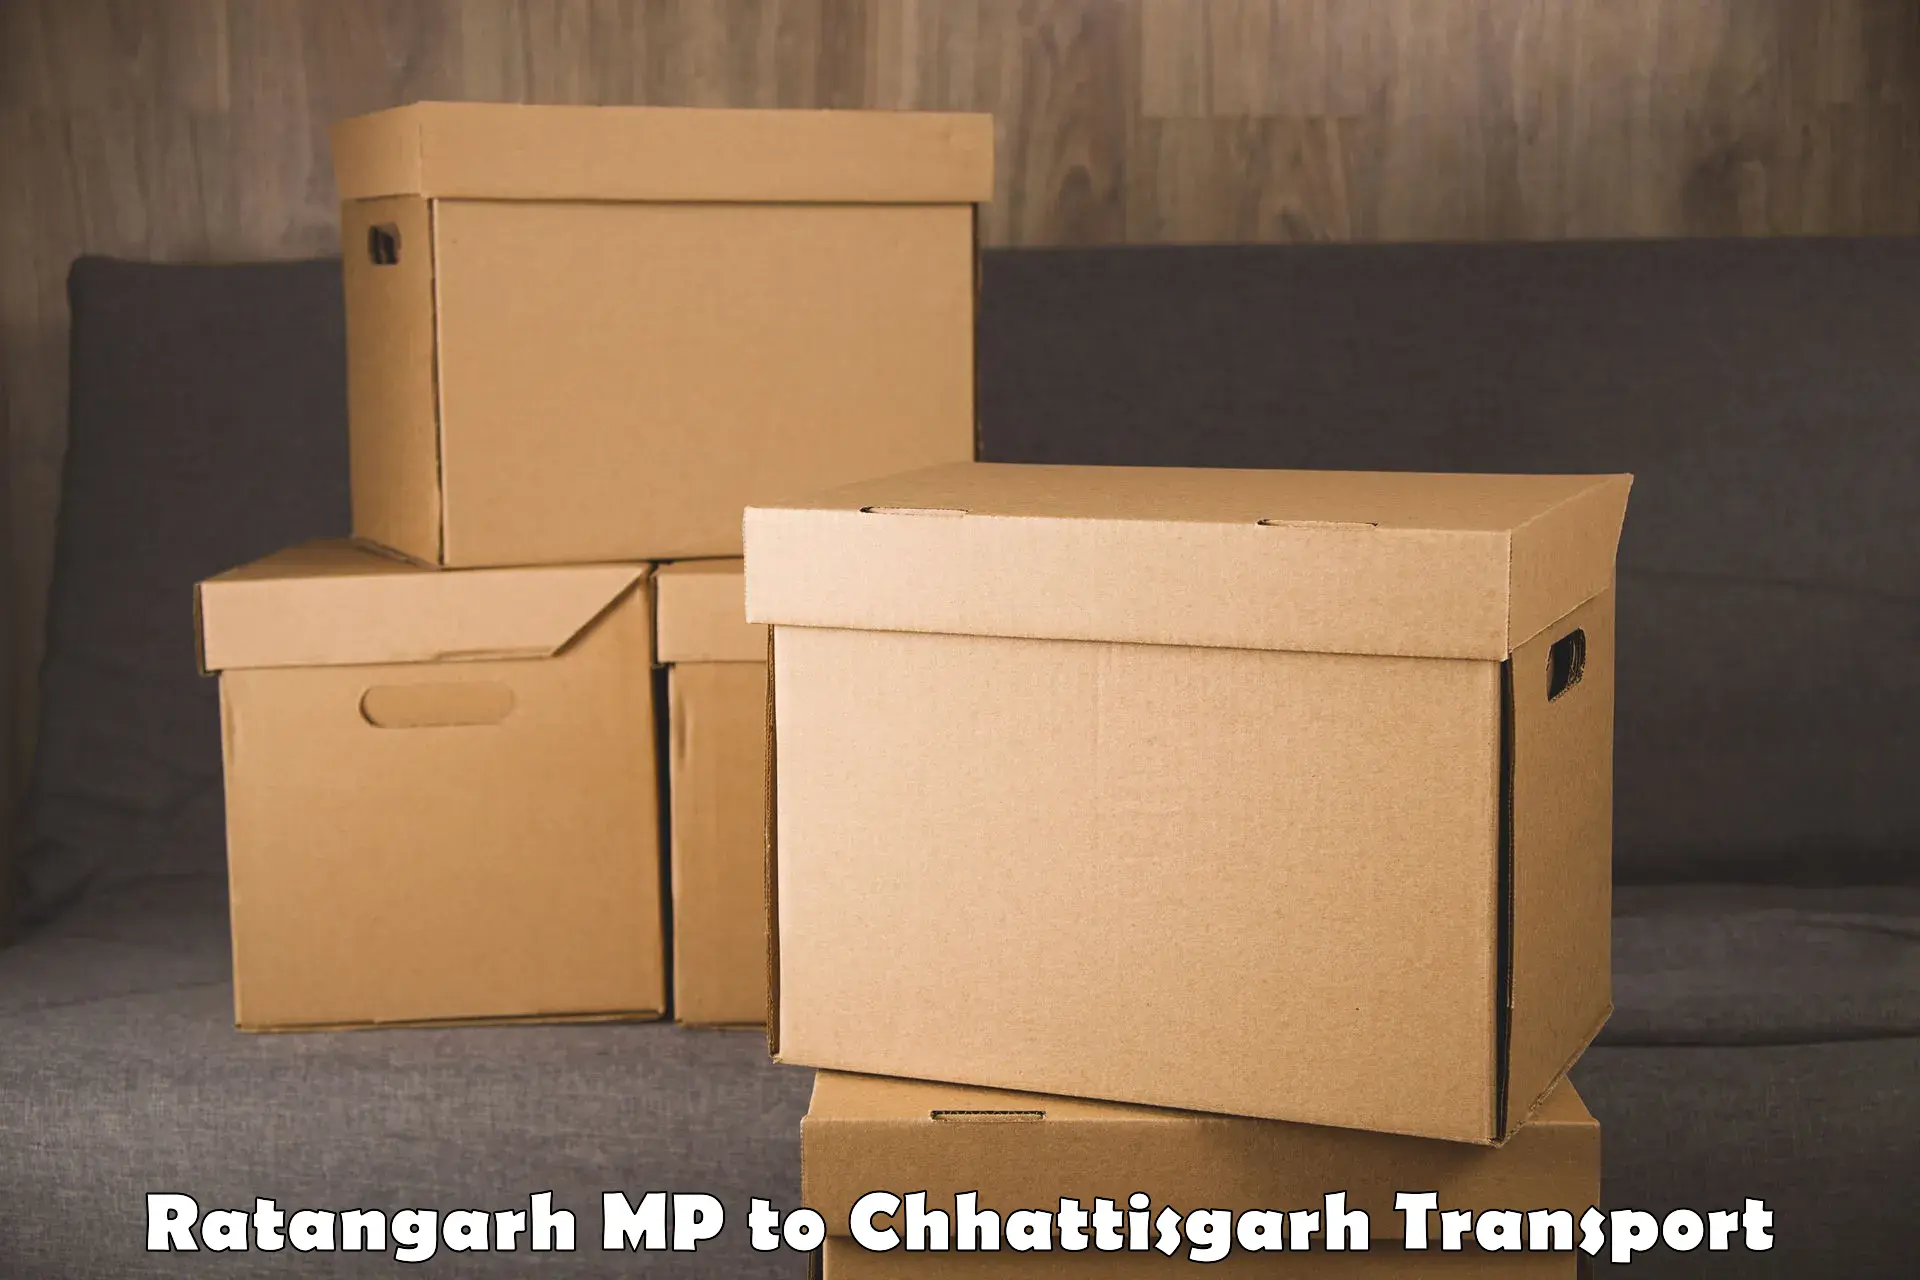 Daily transport service Ratangarh MP to Ramanujganj